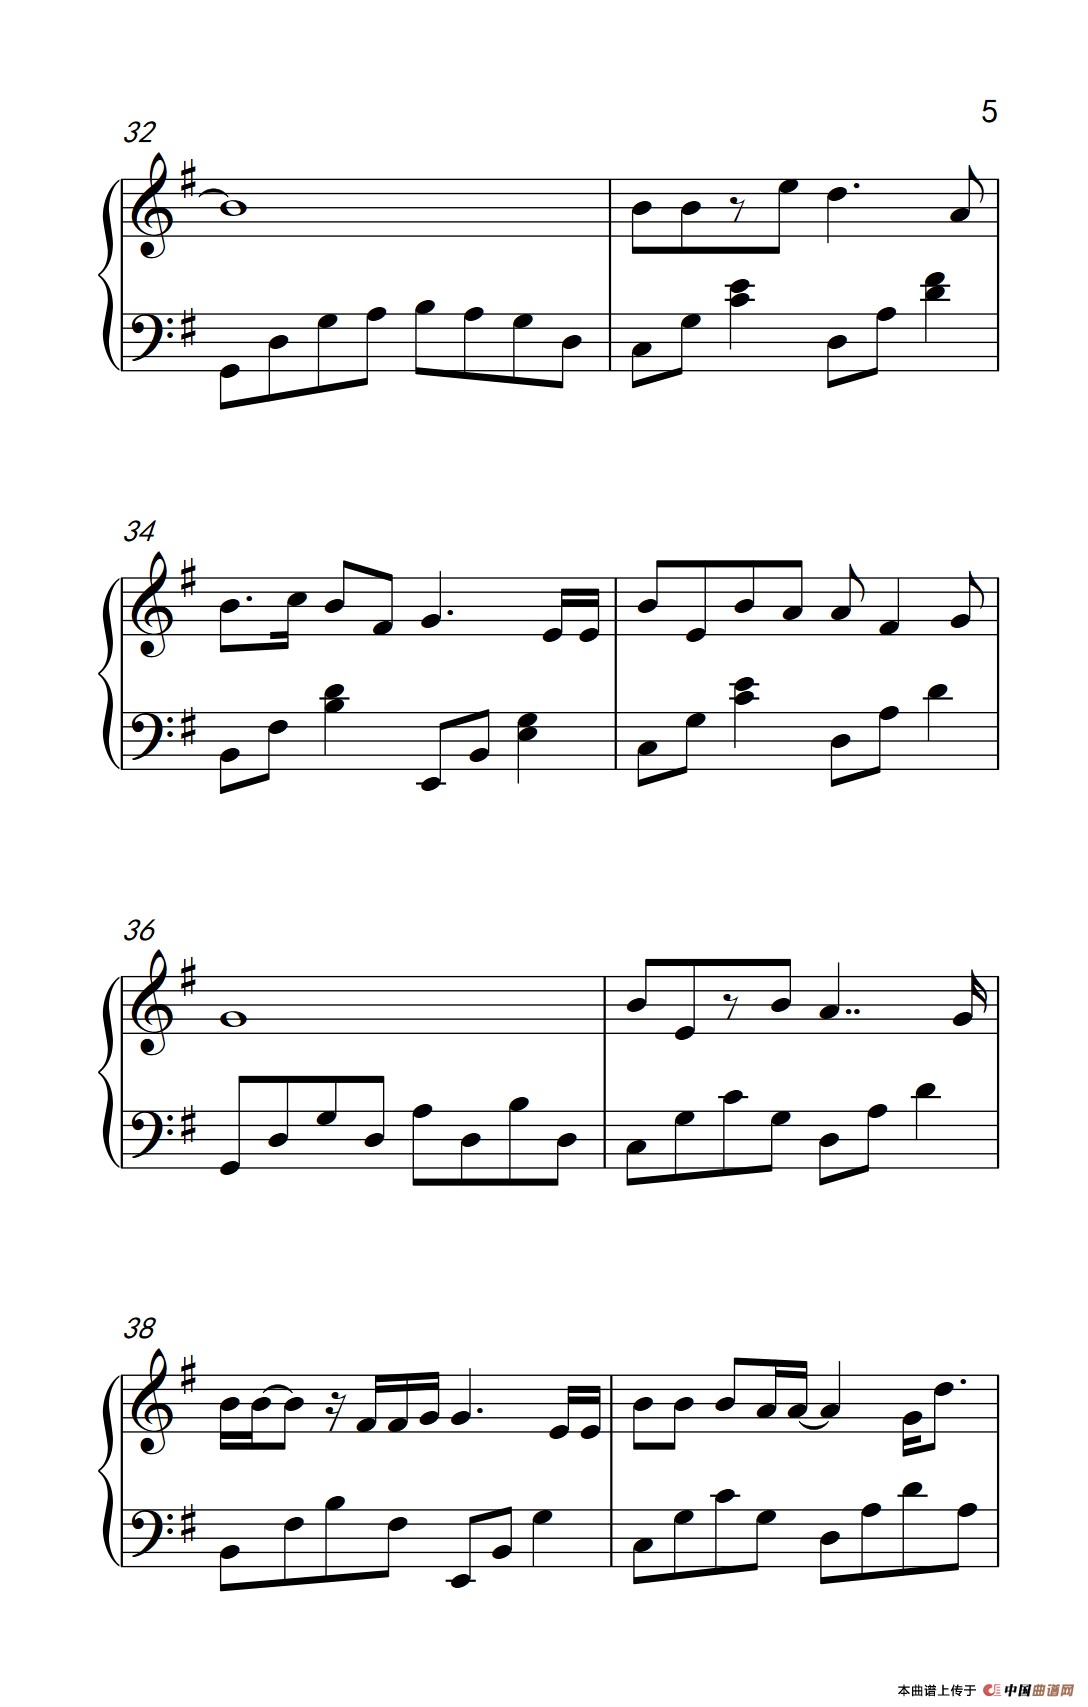 《斑马斑马》钢琴曲谱图分享